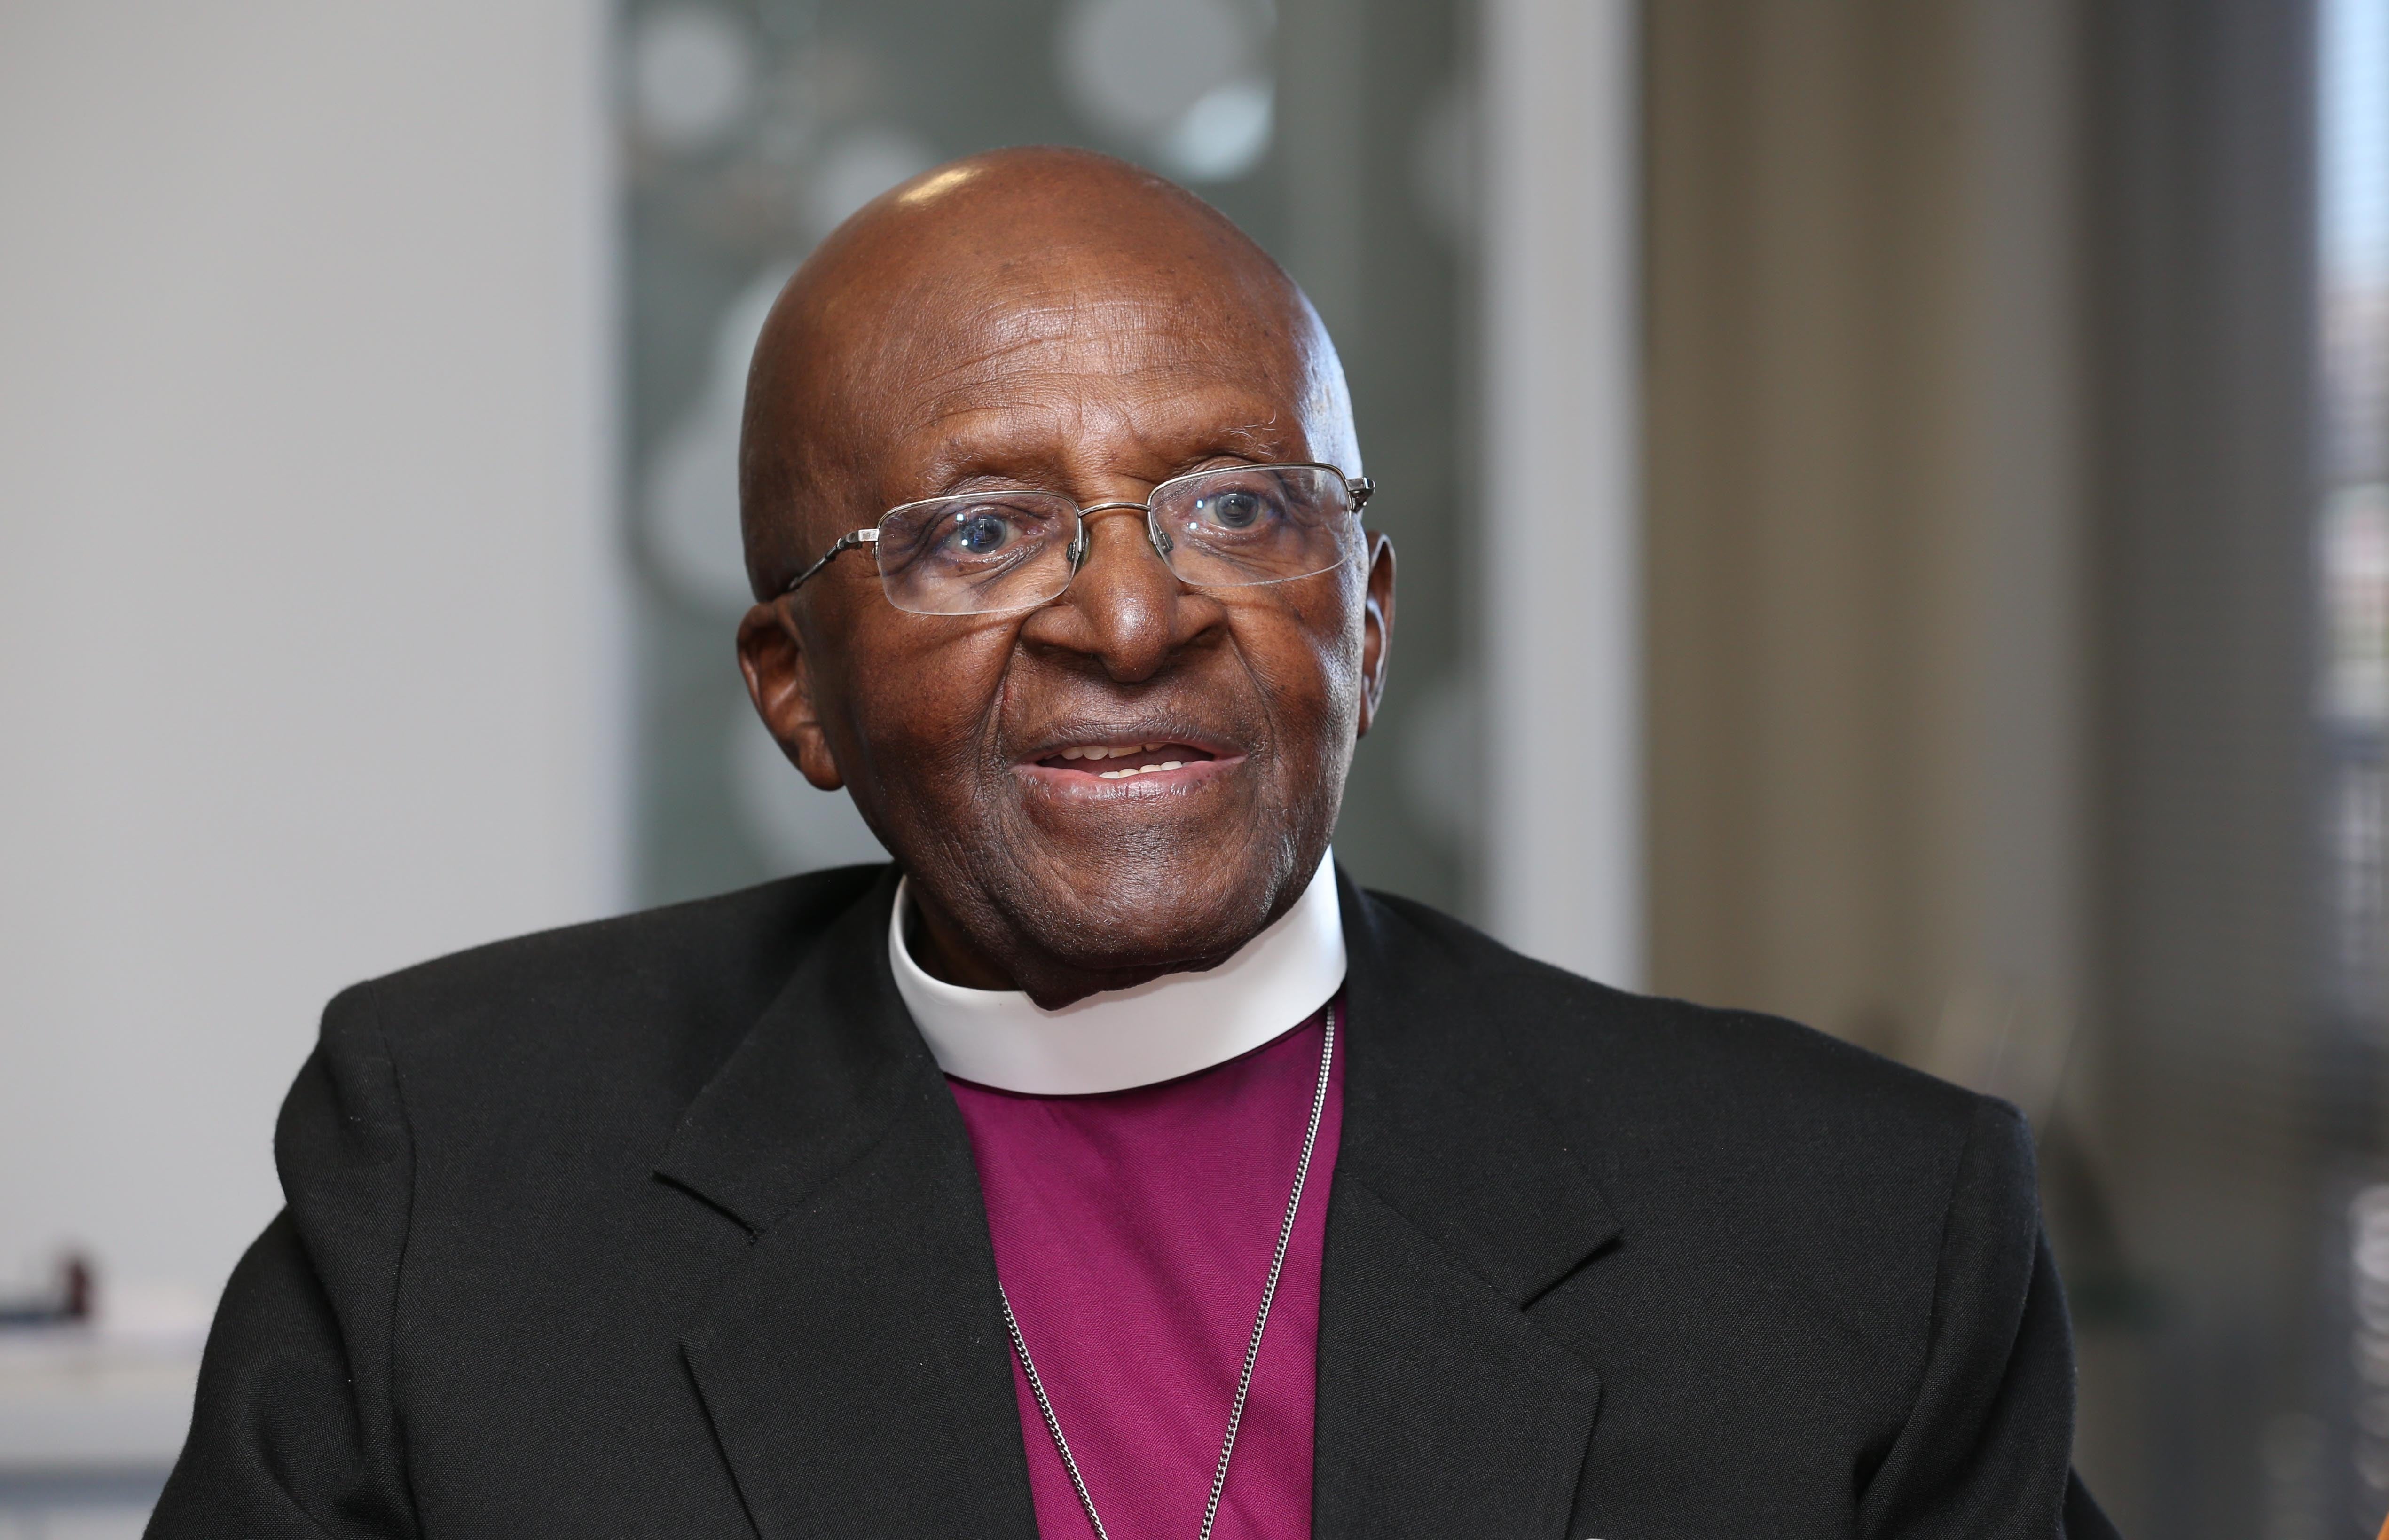 Archbishop Desmond Tutu, who has died aged 90